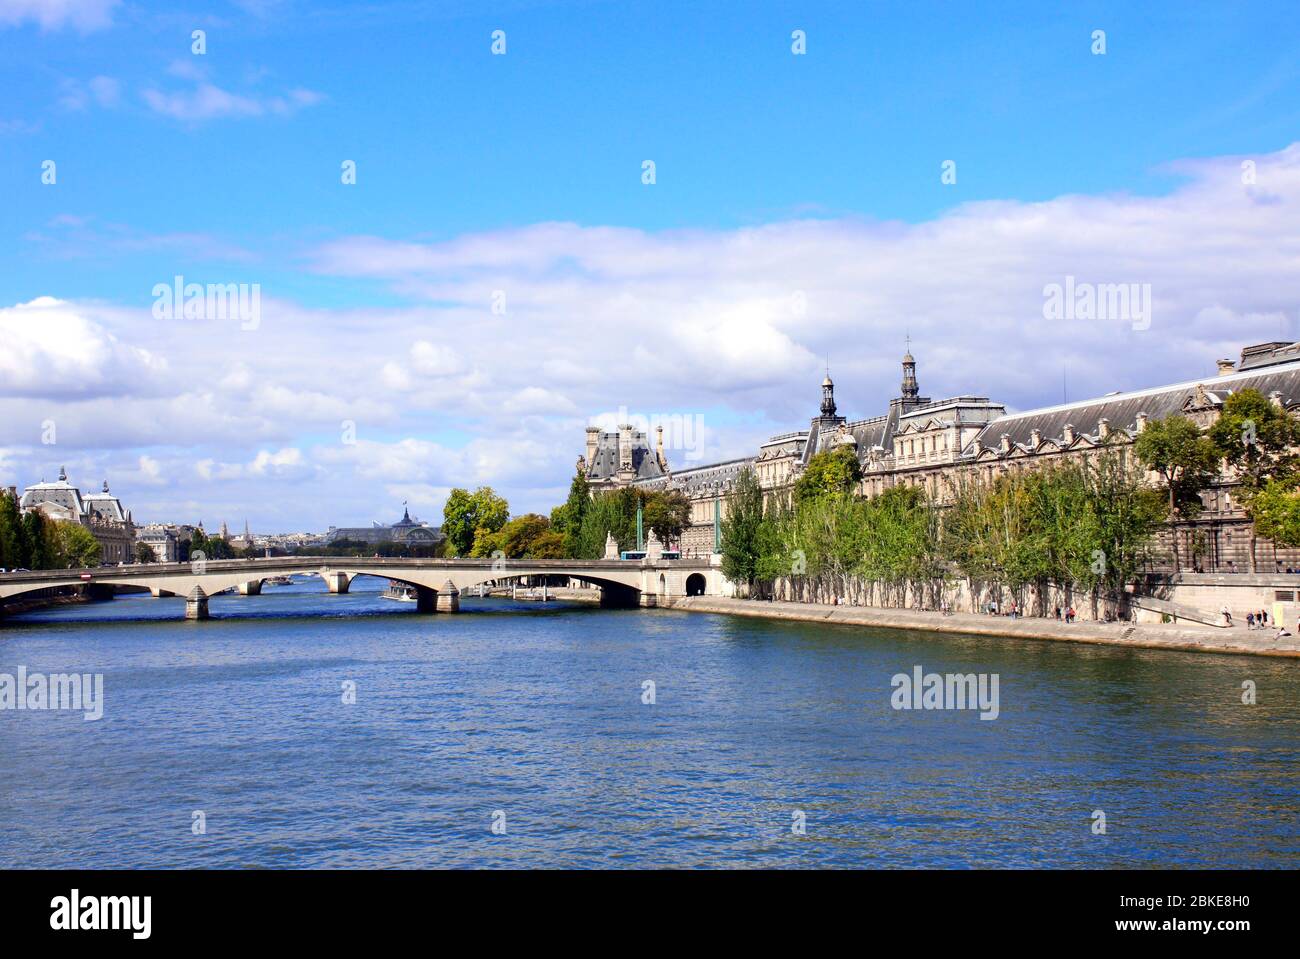 Vue sur le palais du Louvre et les ponts de la Seine, Paris, France, Europe. Célèbre site d'architecture de Paris Banque D'Images